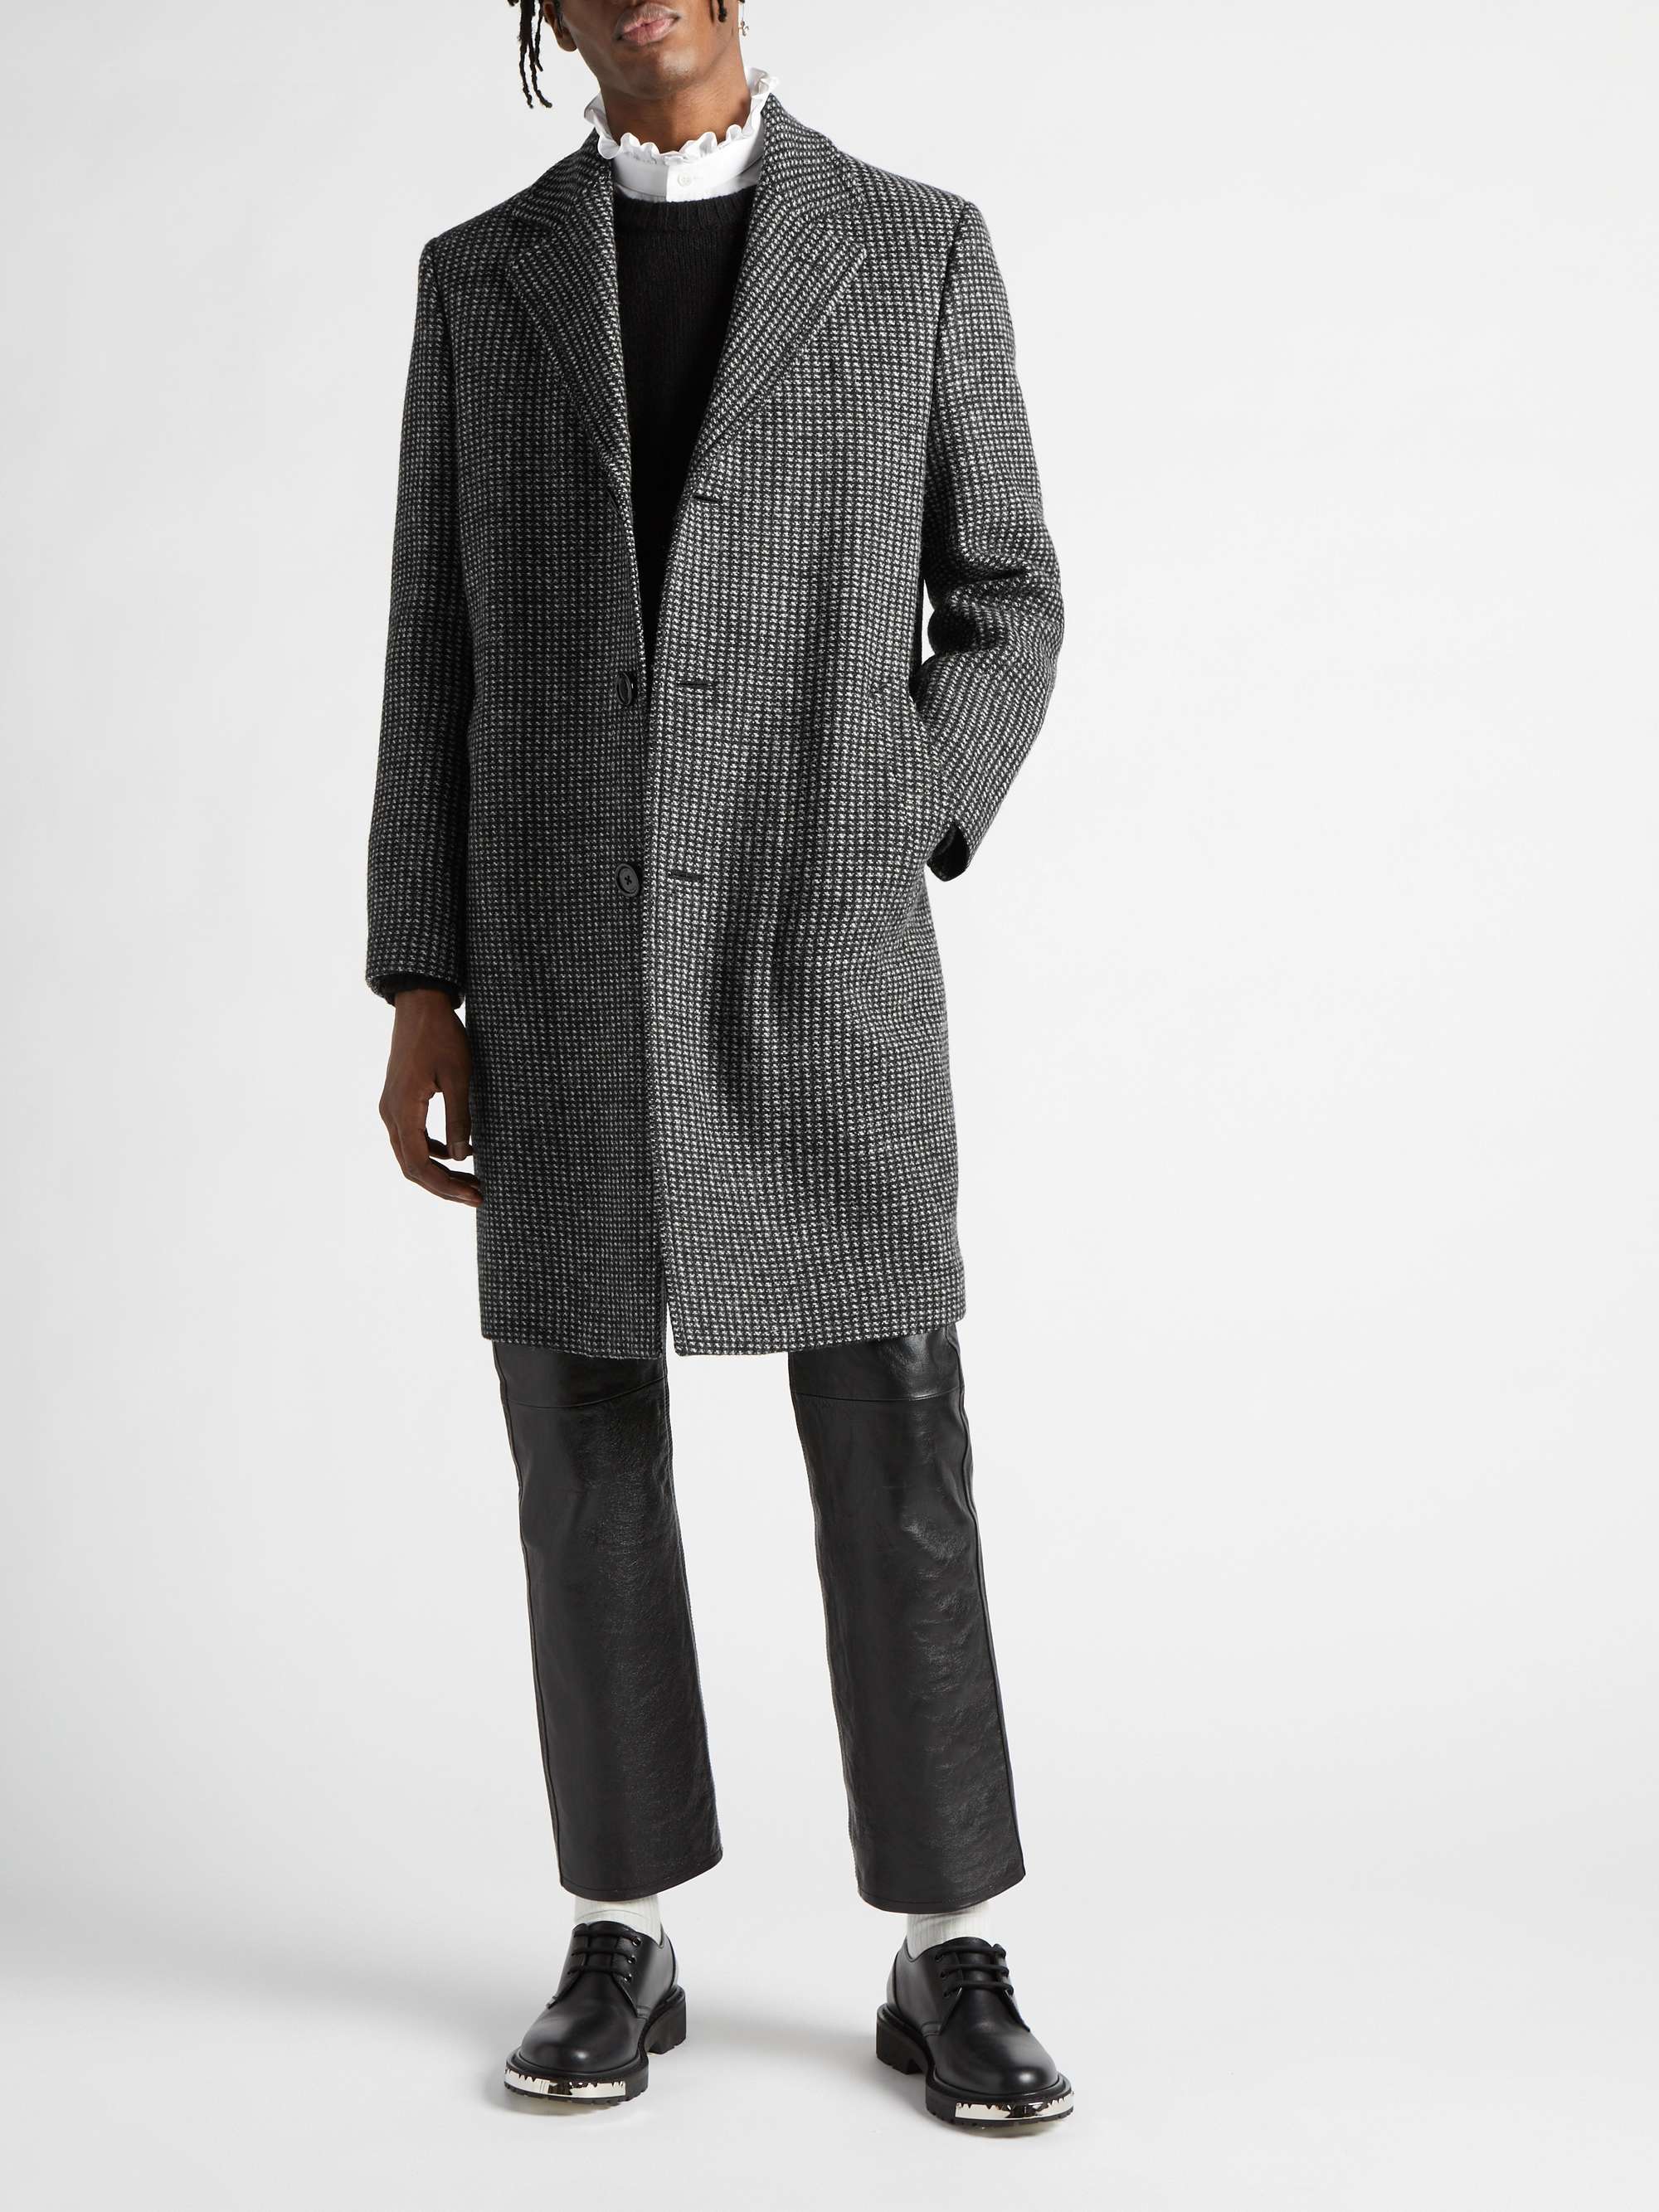 CELINE HOMME Checked Wool-Tweed Coat